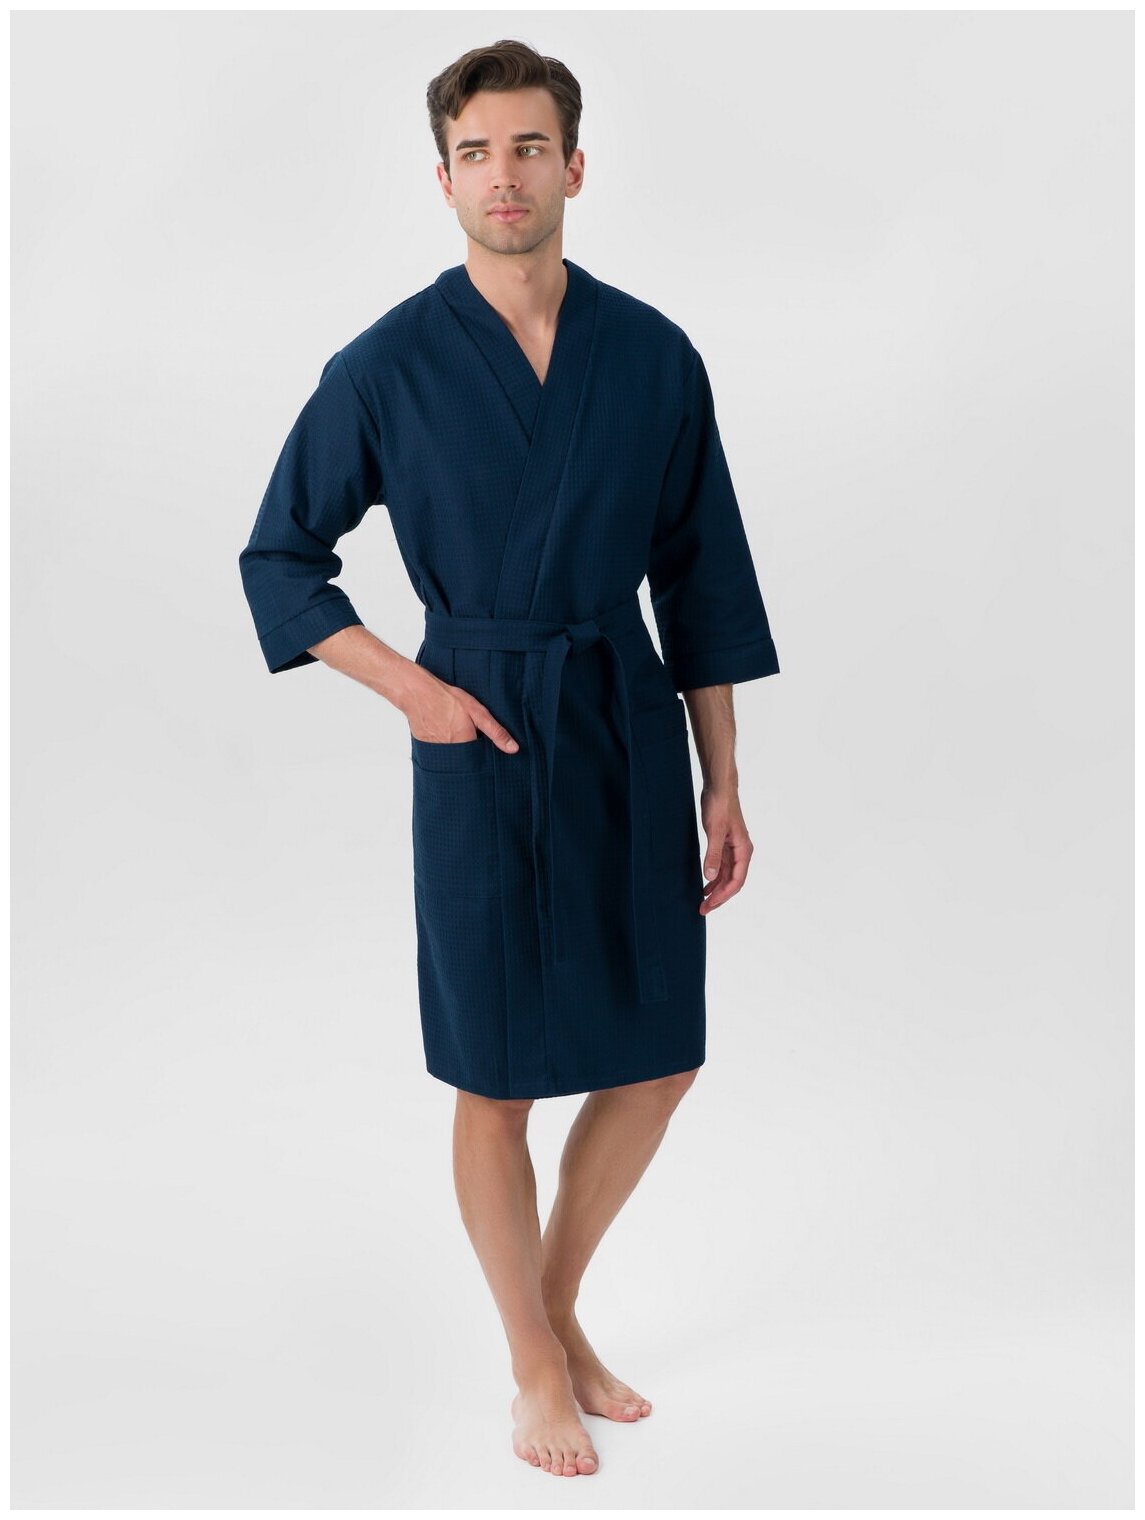 Мужской укороченный вафельный халат с планкой, темно-синий. Размер: 46-48 - фотография № 1